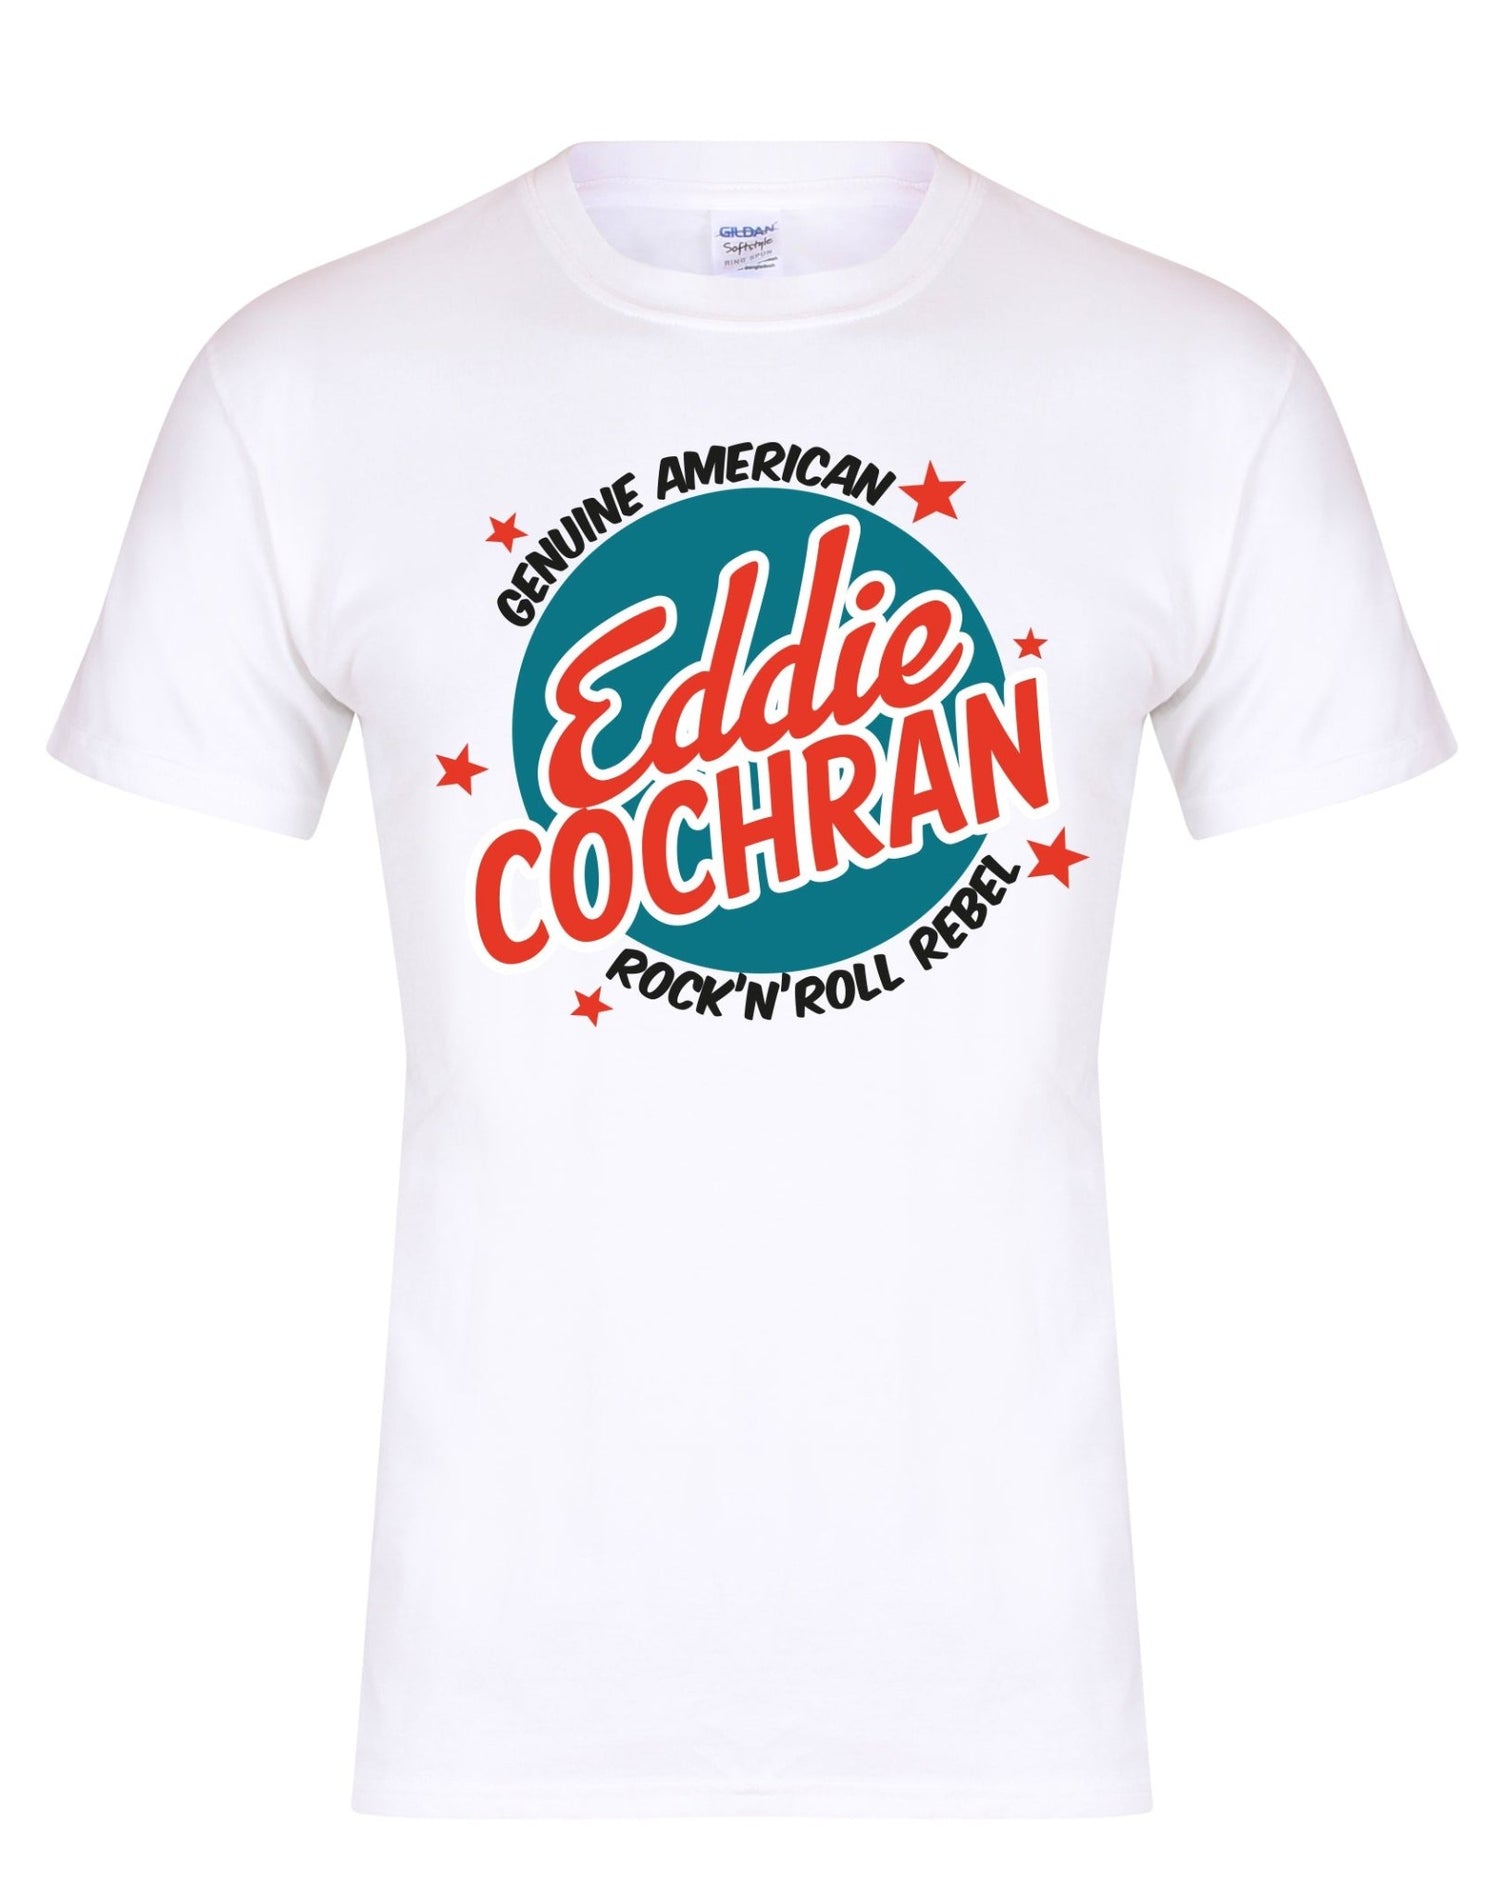 Eddie Cochran - All American rock'n'roll rebel